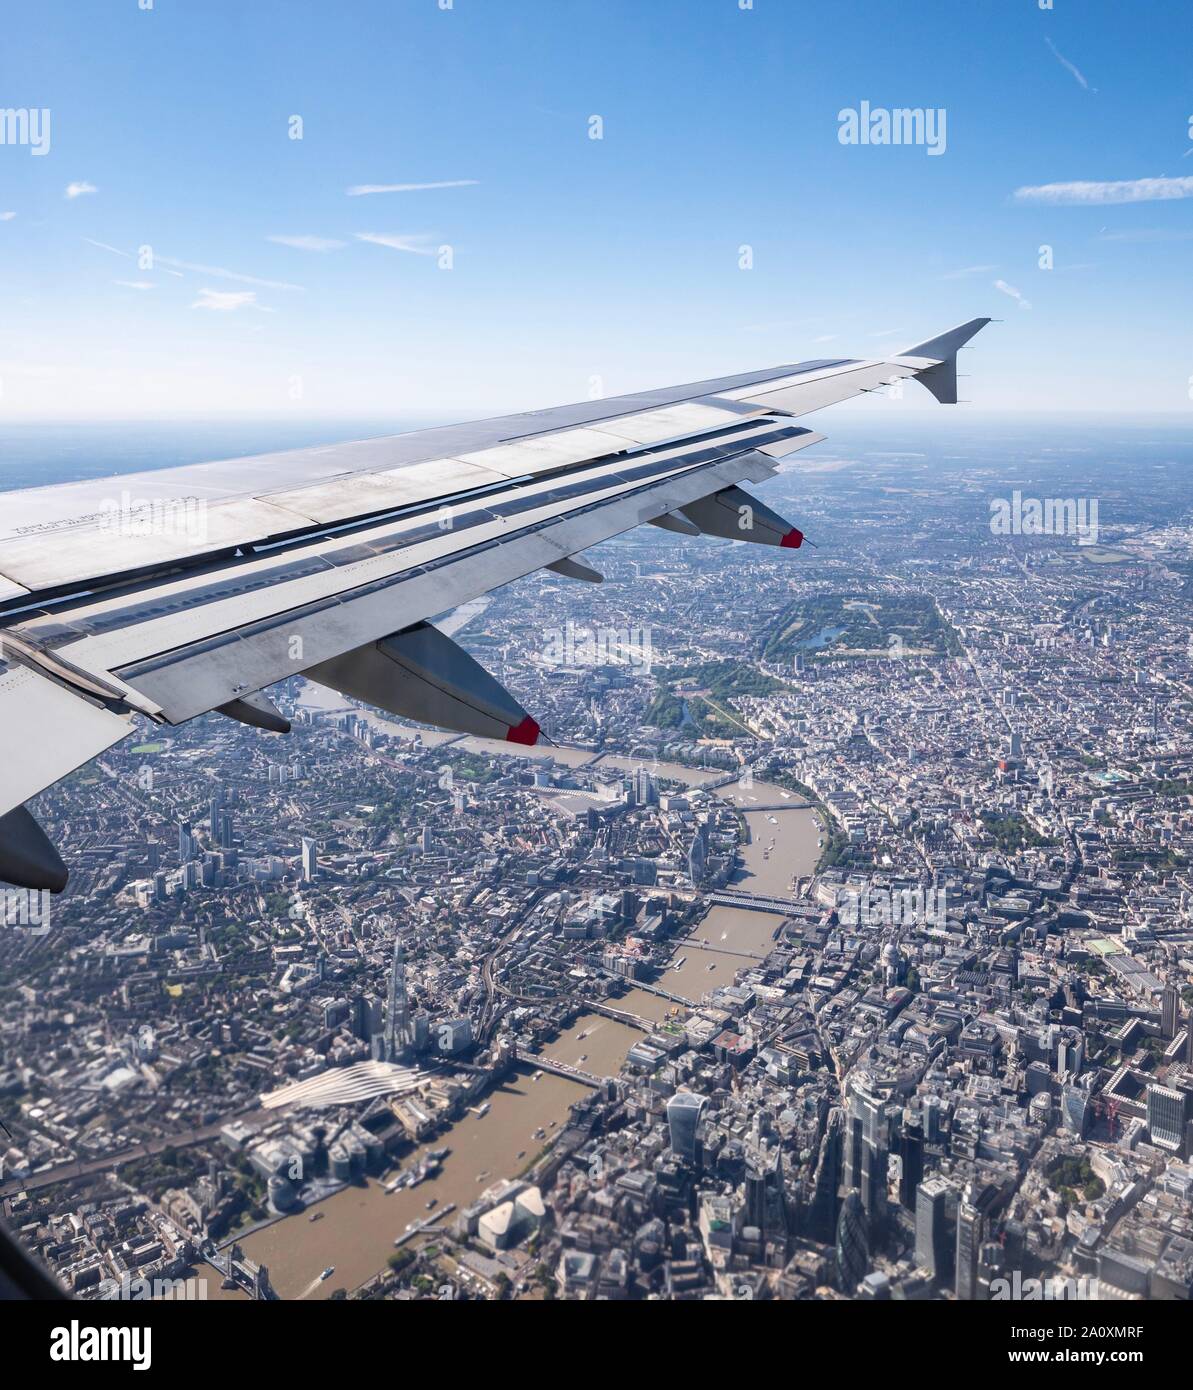 Vue depuis la fenêtre en avion sur la Tamise et le centre-ville, avec Shard et Hyde Park, Londres, Angleterre, Royaume-Uni Banque D'Images